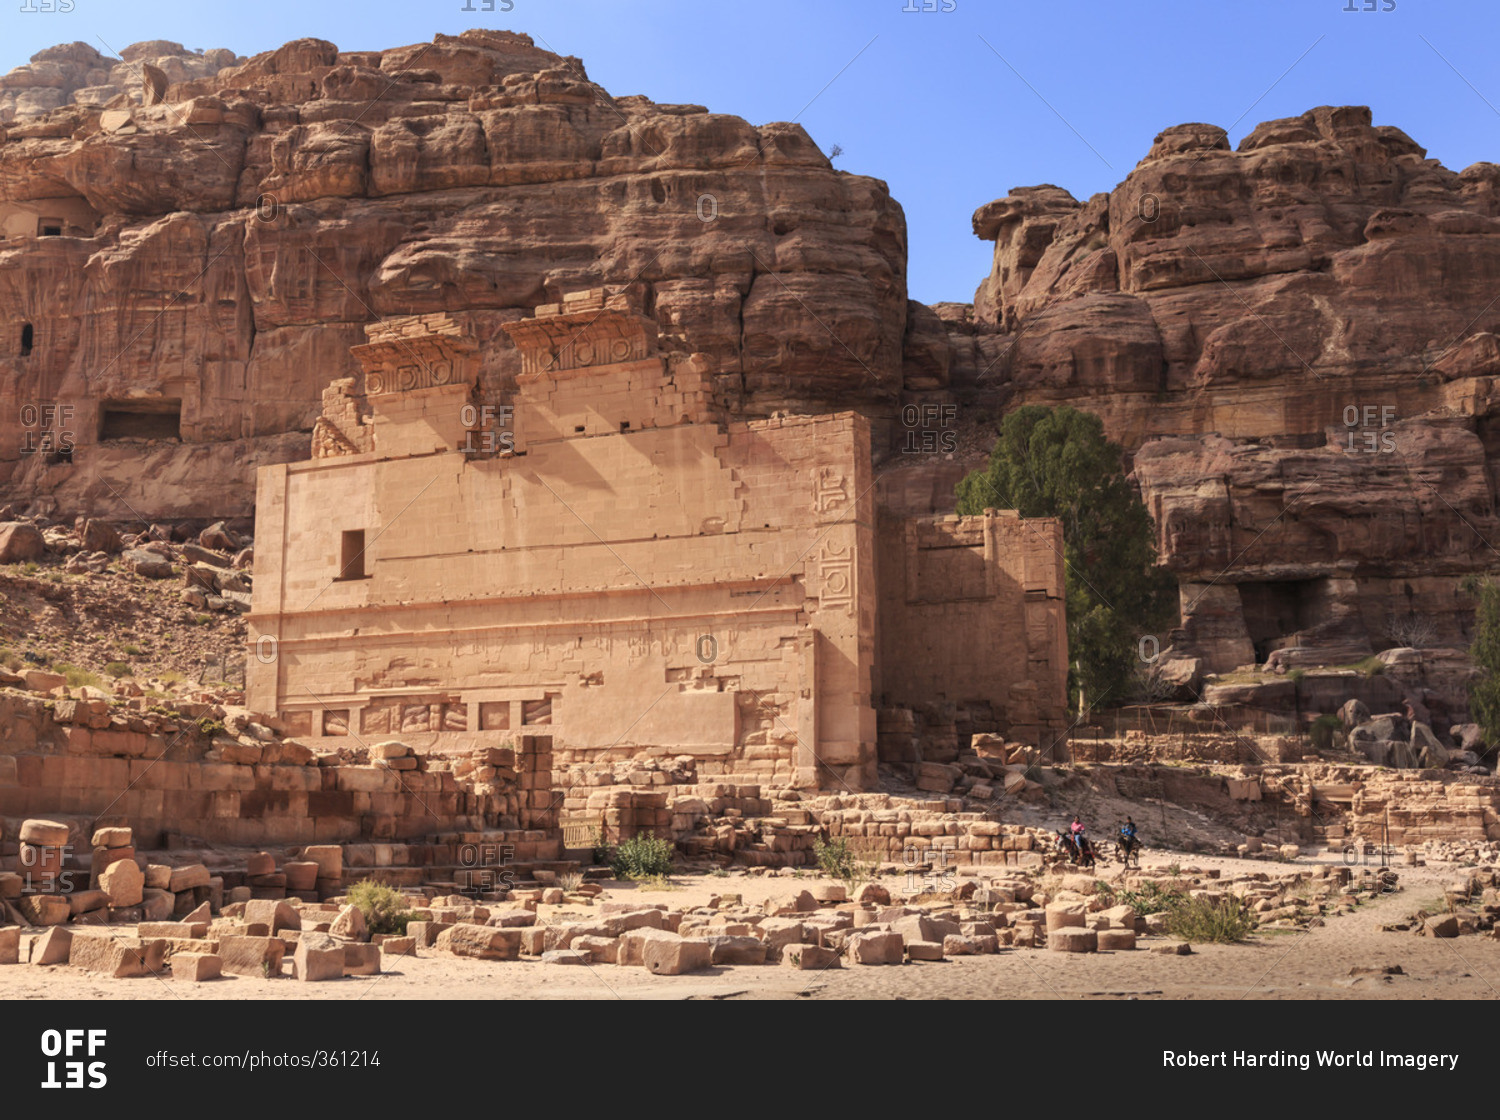 Local men on donkeys pass Qasr al-Bint temple, City of Petra ruins, Petra, Jordan, Middle East